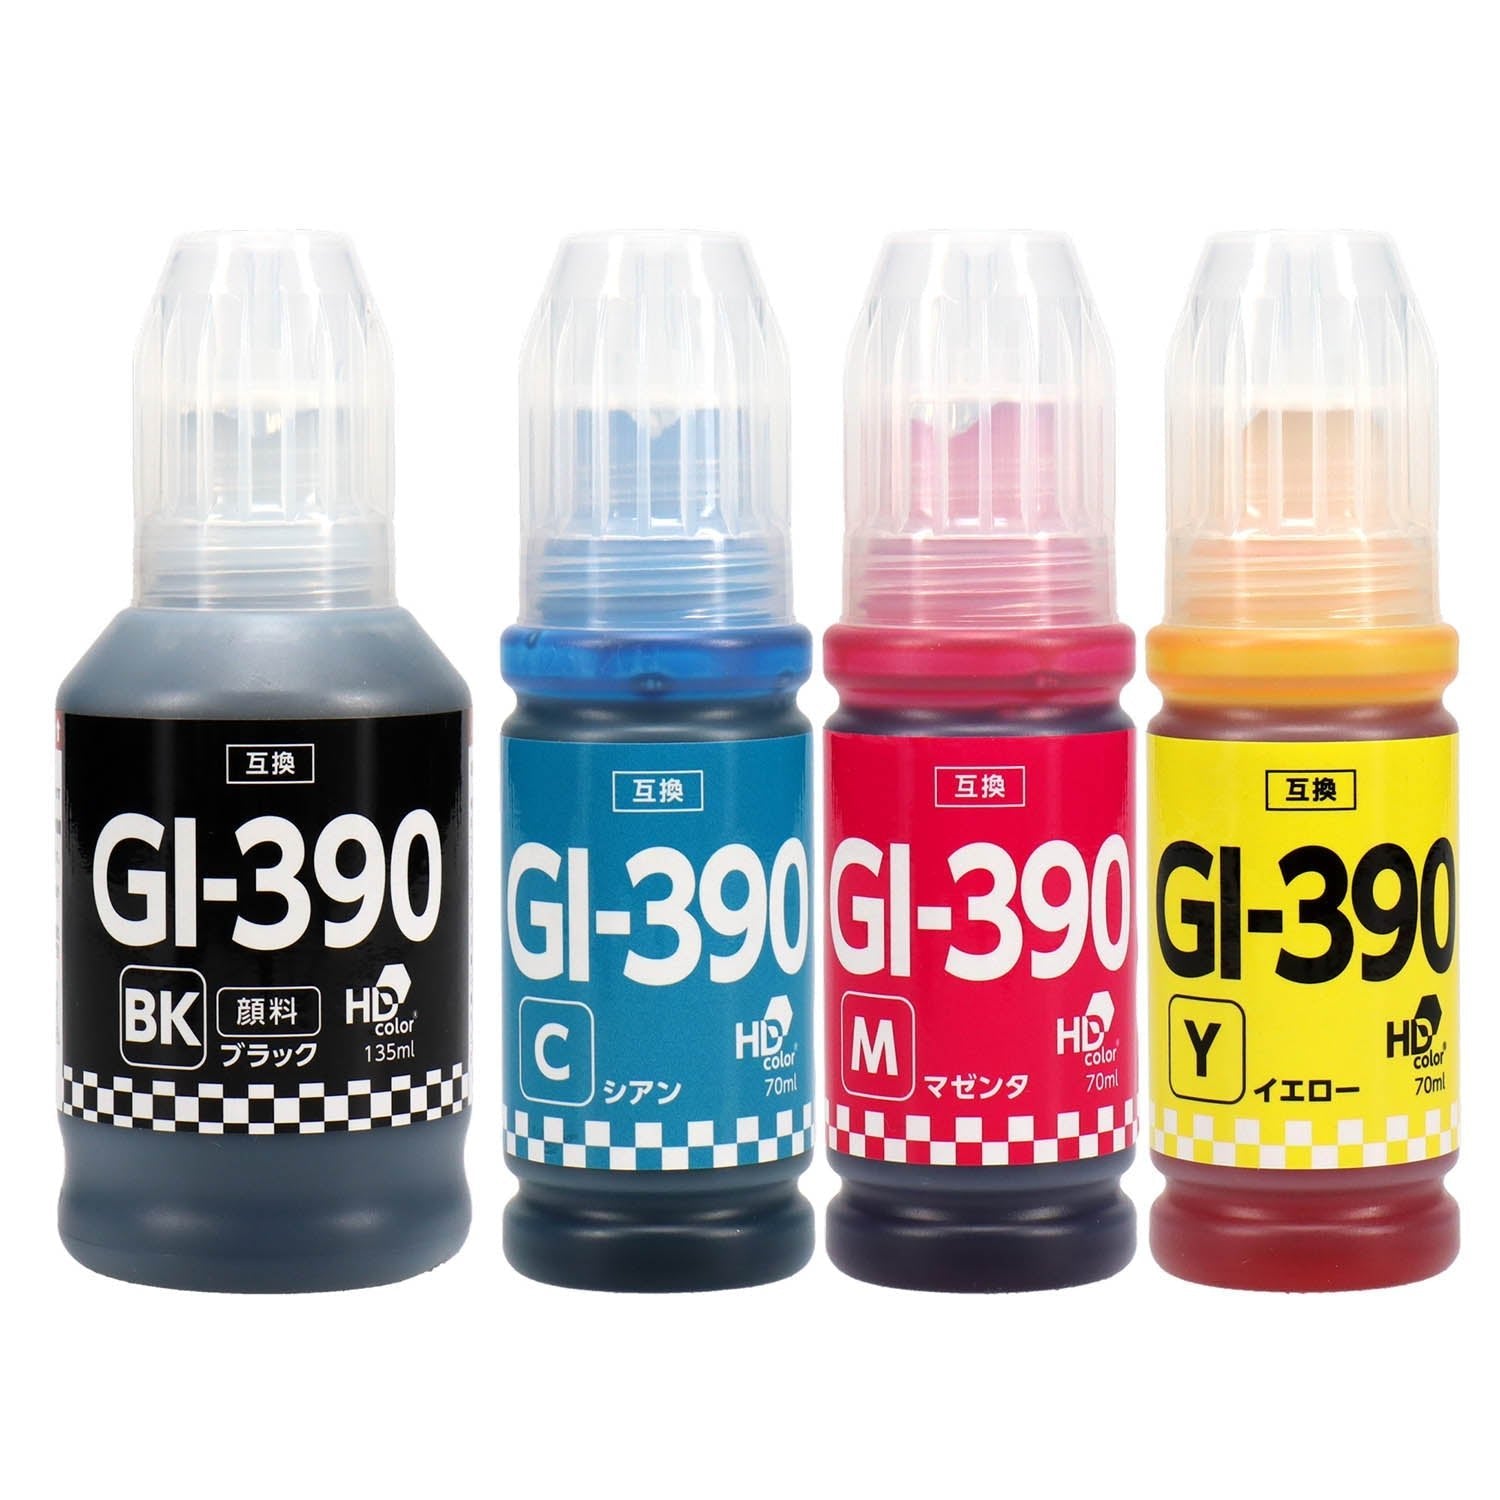 キヤノン用 GI-390 互換インクボトル 4色セット